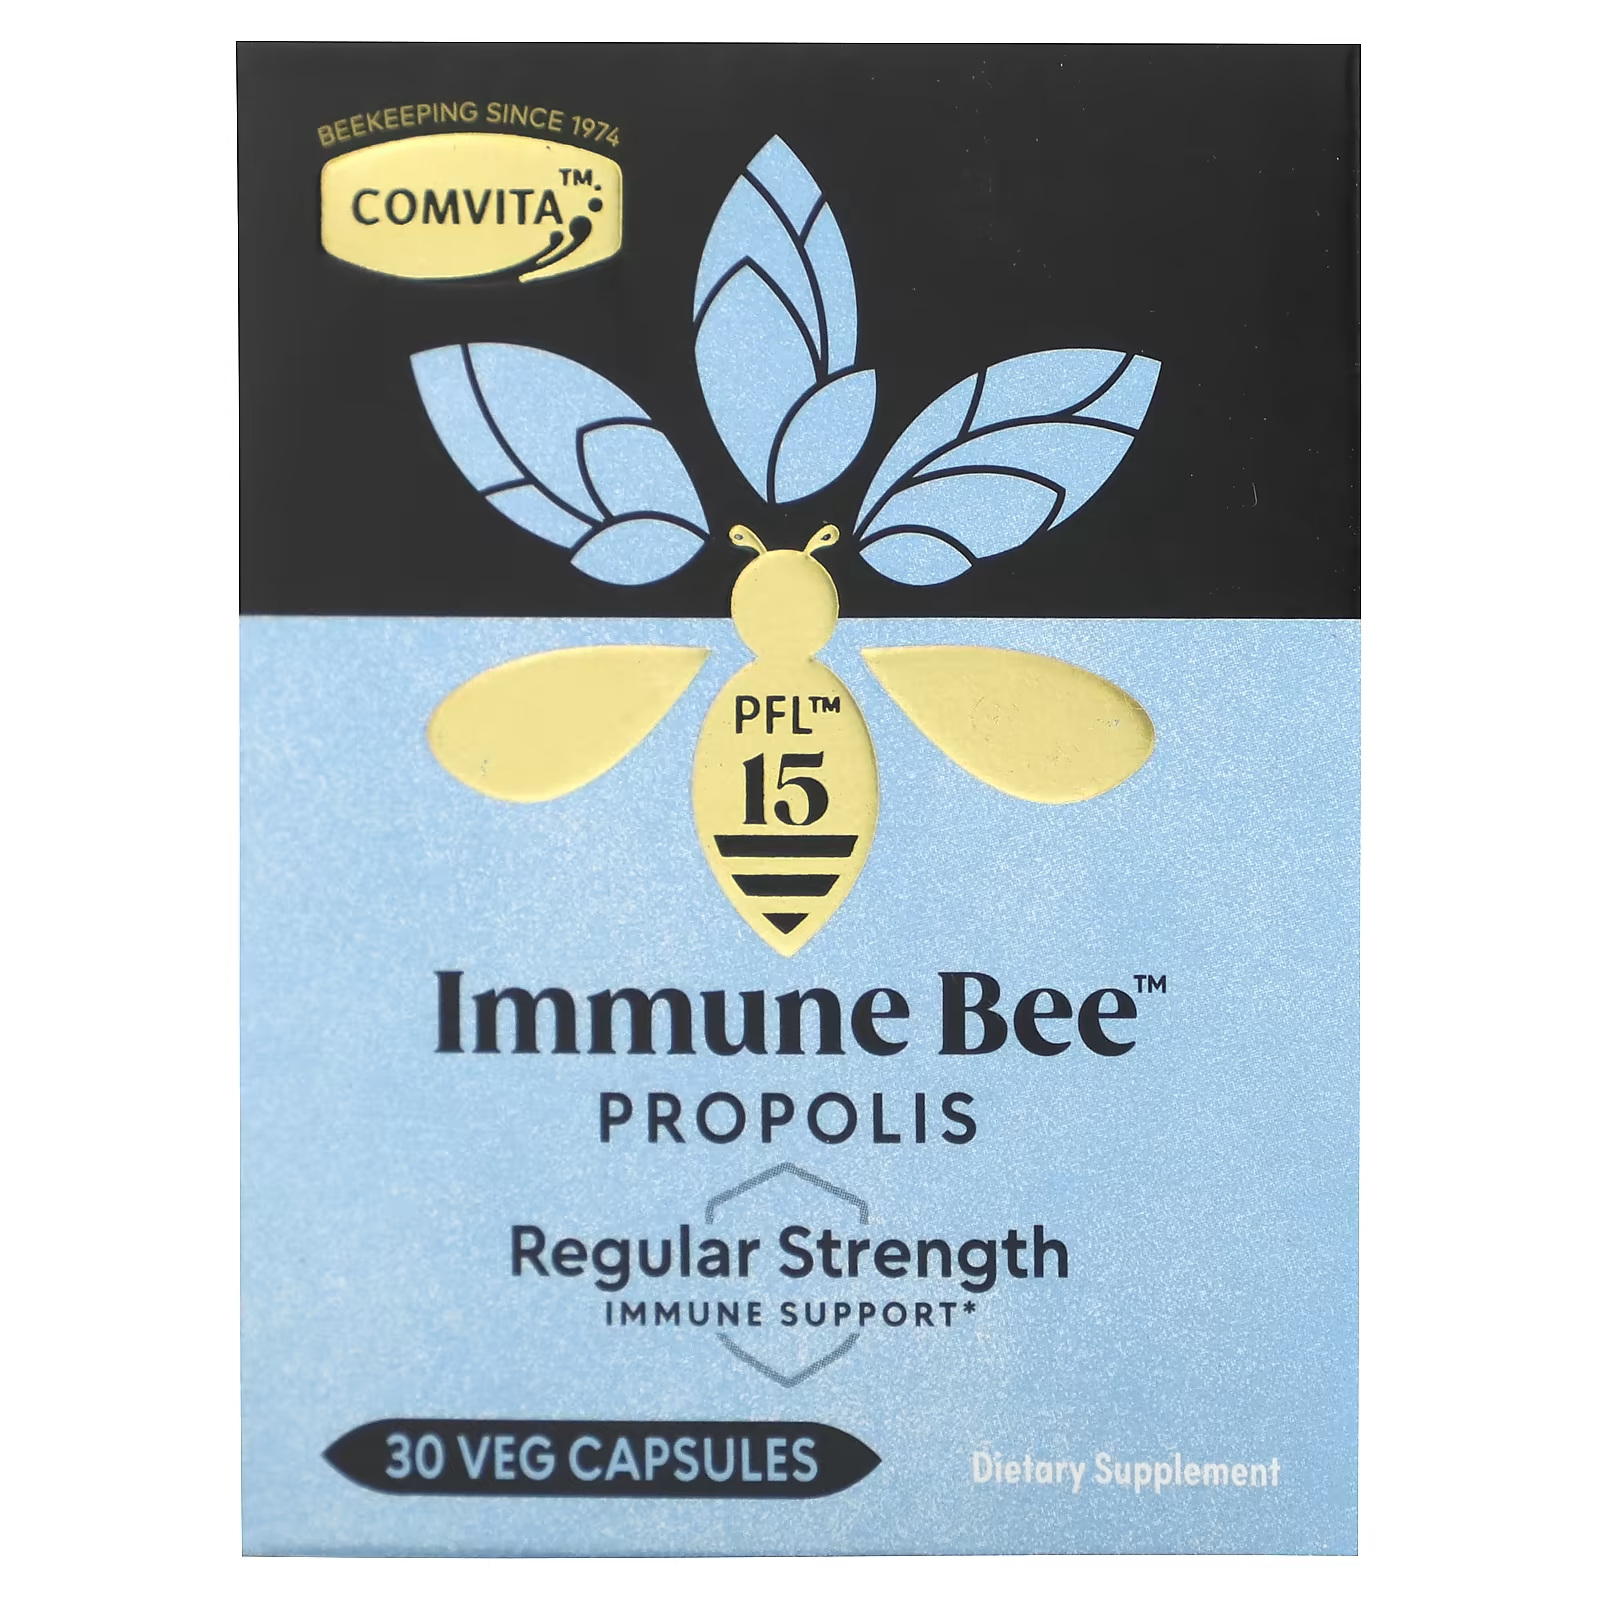 Пищевая добавка Comvita Immune Bee Propolis обычная поддержка иммунитета, 30 растительных капсул пищевая добавка comvita immune bee propolis обычная поддержка иммунитета 30 растительных капсул